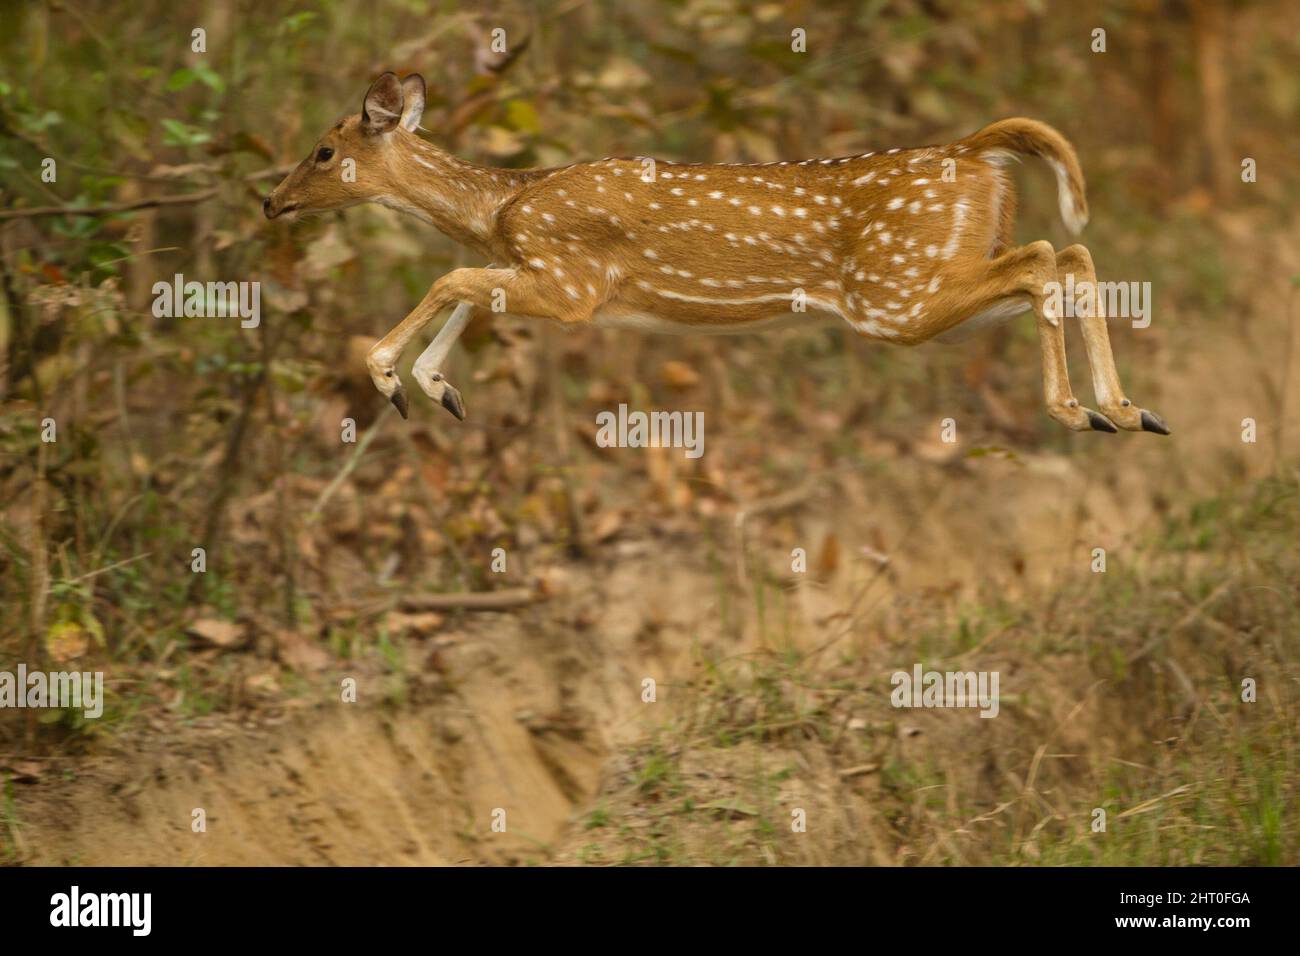 Vitale (asse), femmina che accelera dal pericolo. Chital può correre fino a 65 km/h per sfuggire a un predatore. Pench National Park, Madhya Pradesh, India Foto Stock